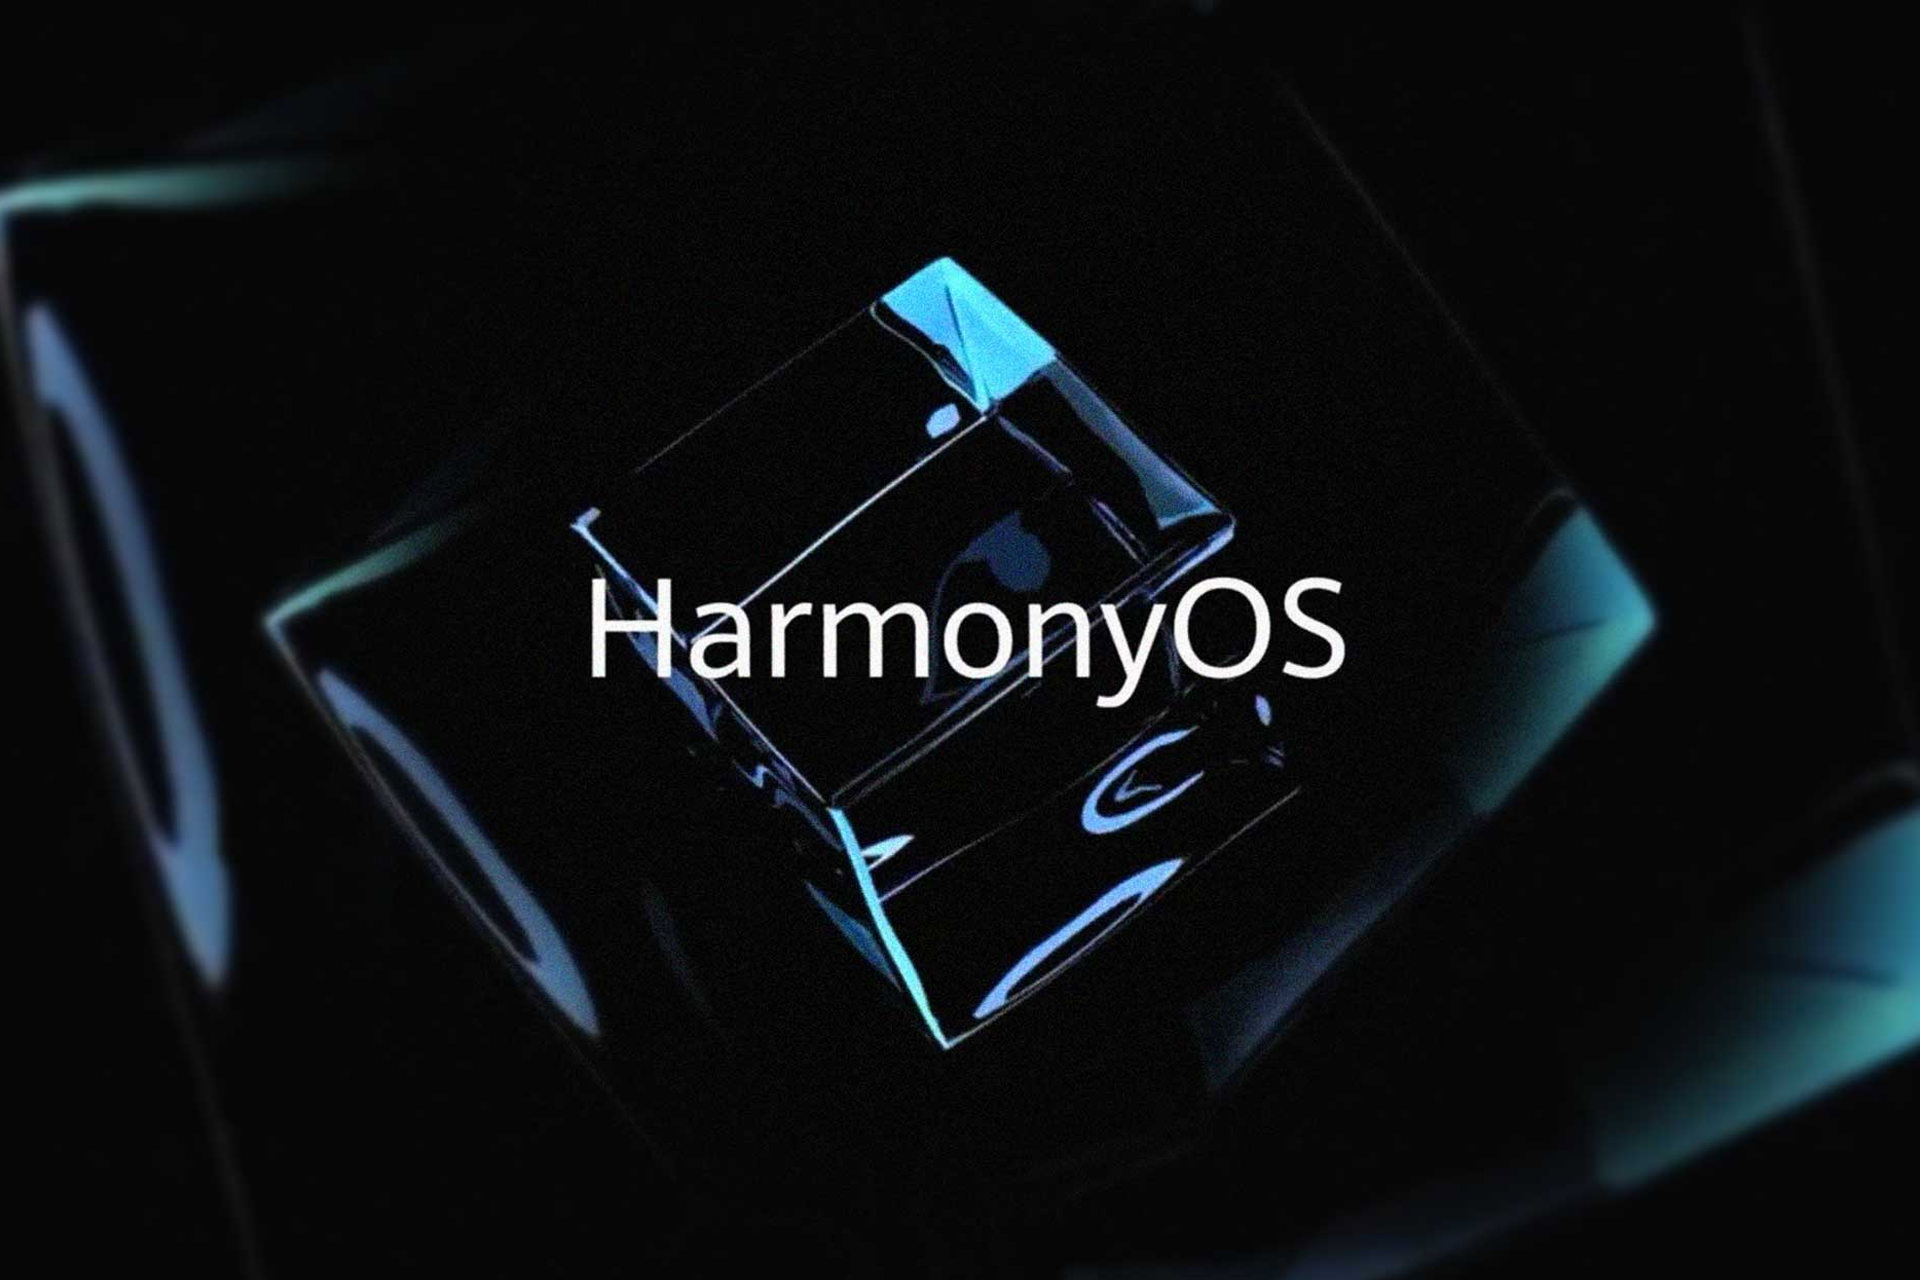 2021 1 huawei harmonyos logo black graphic 638bb30a8b369136d4587291